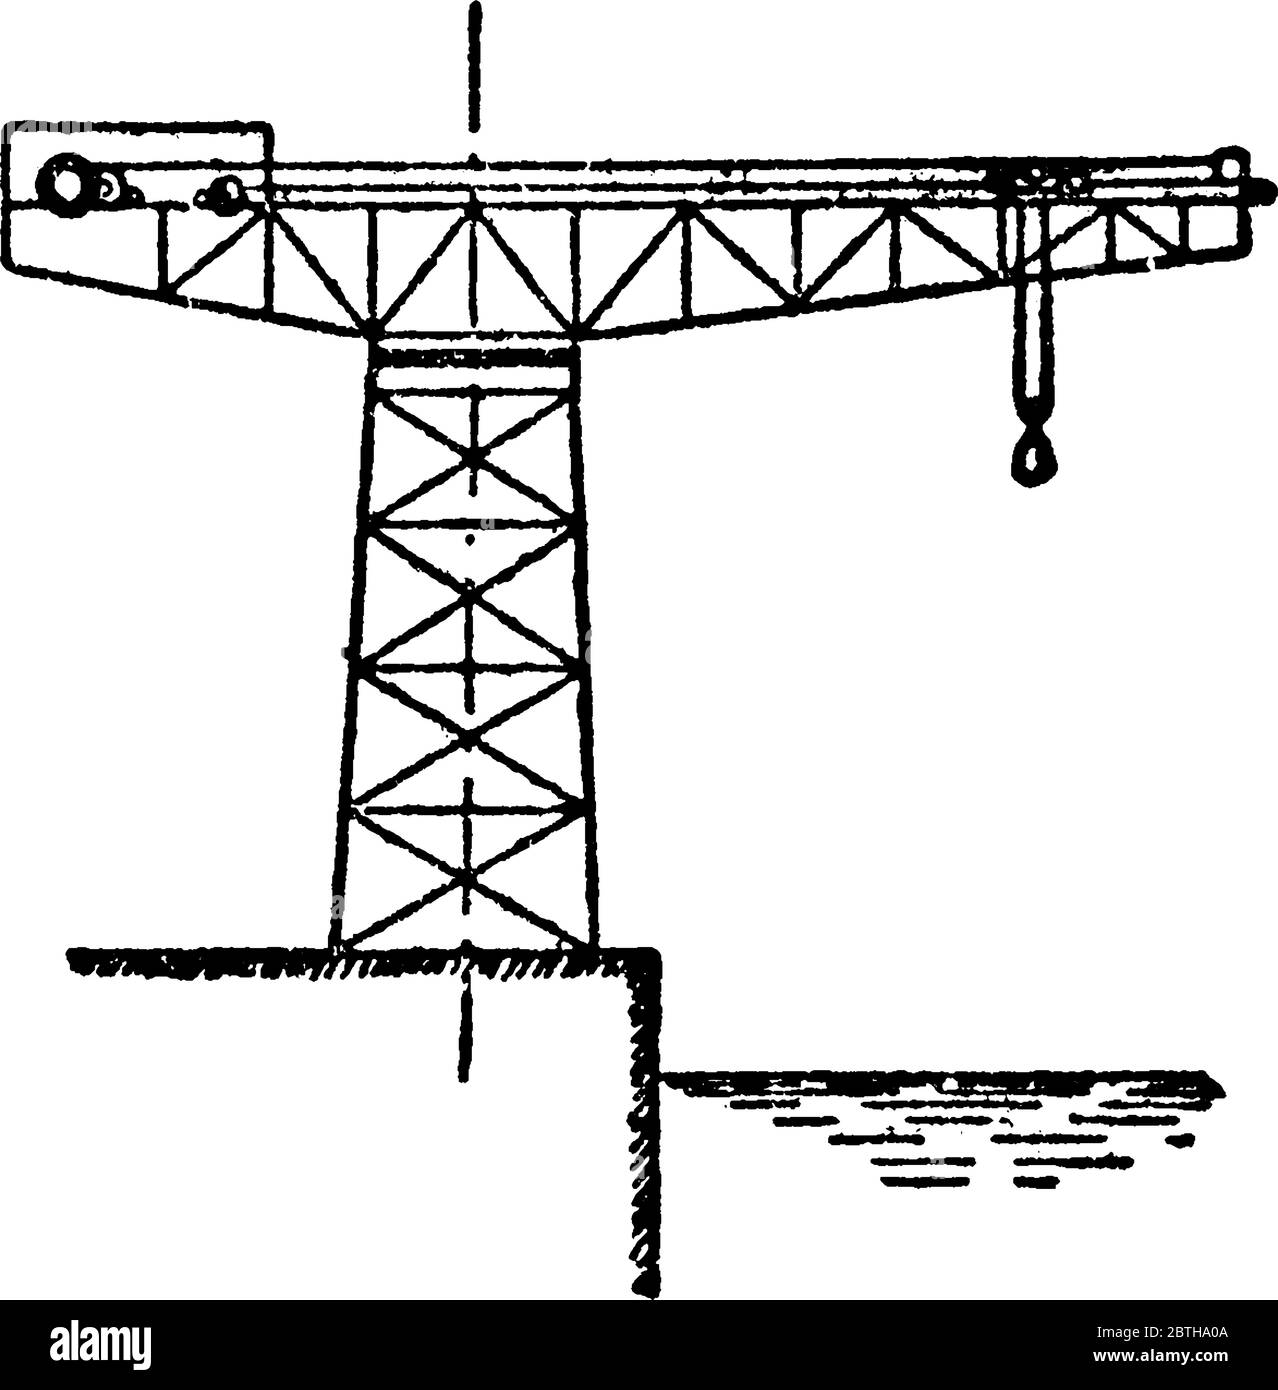 Une grue à flèche fixe composée d'une tour en acier sur laquelle tourne une grande poutre horizontale double en porte-à-faux; la partie avant de cette poutre, ca Illustration de Vecteur